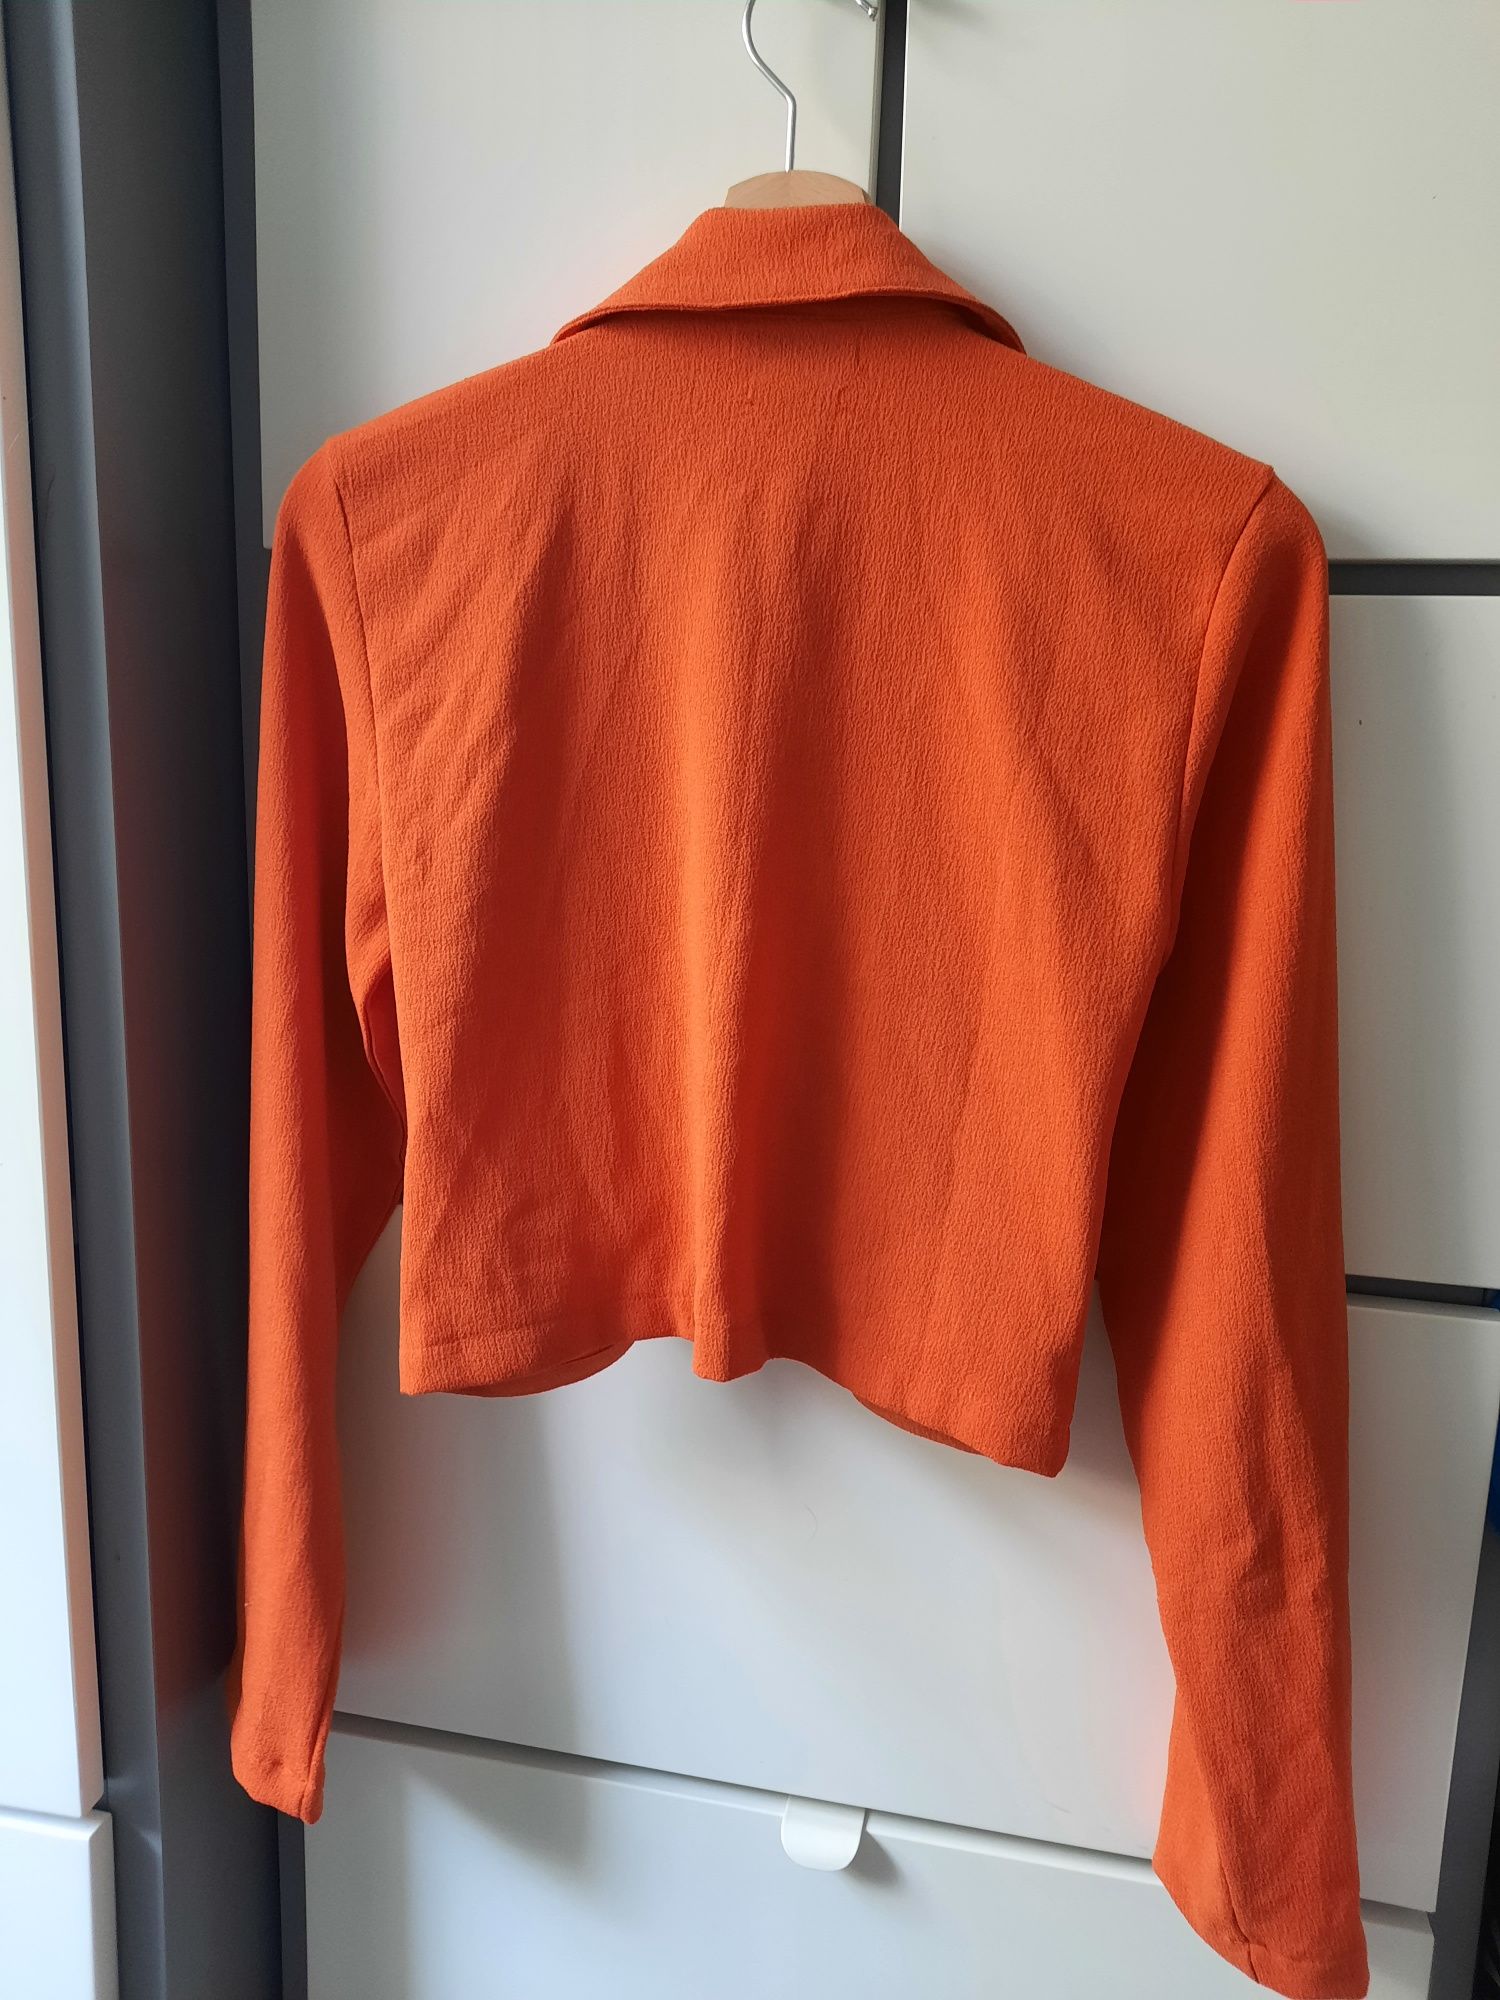 Koszula damska krótka z długim rękawem pomarańczowa Reserved r. S